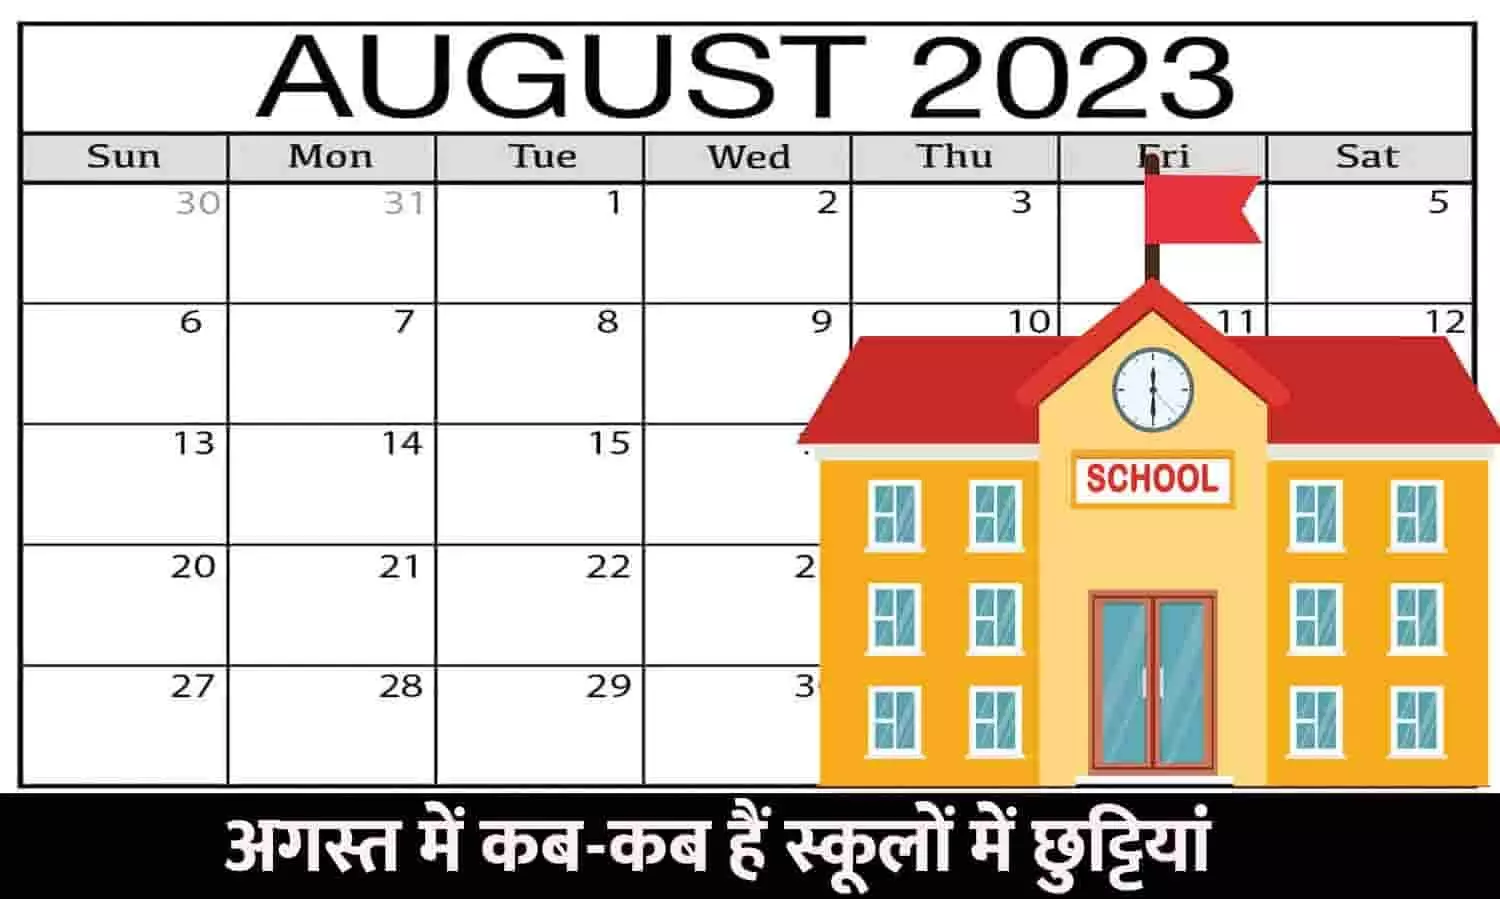 School Holiday In August List 2023: अगस्‍त में कब-कब हैं स्‍कूलों में छुट्टियां, चेक करें लिस्ट